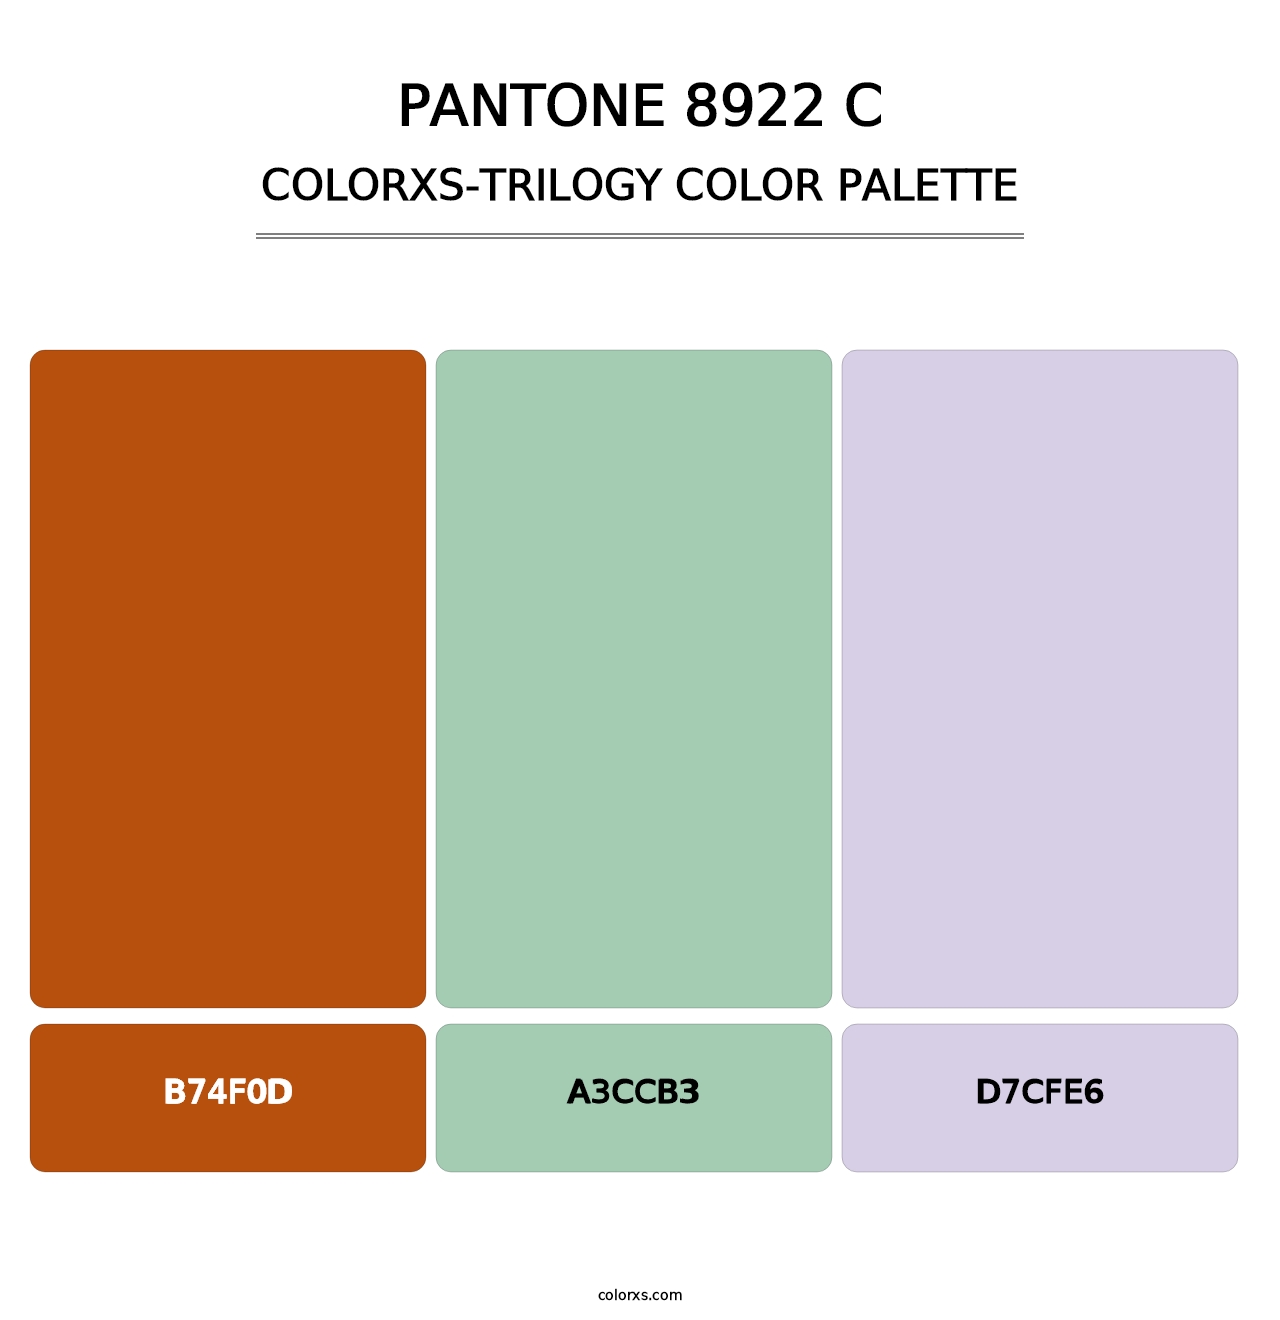 PANTONE 8922 C - Colorxs Trilogy Palette